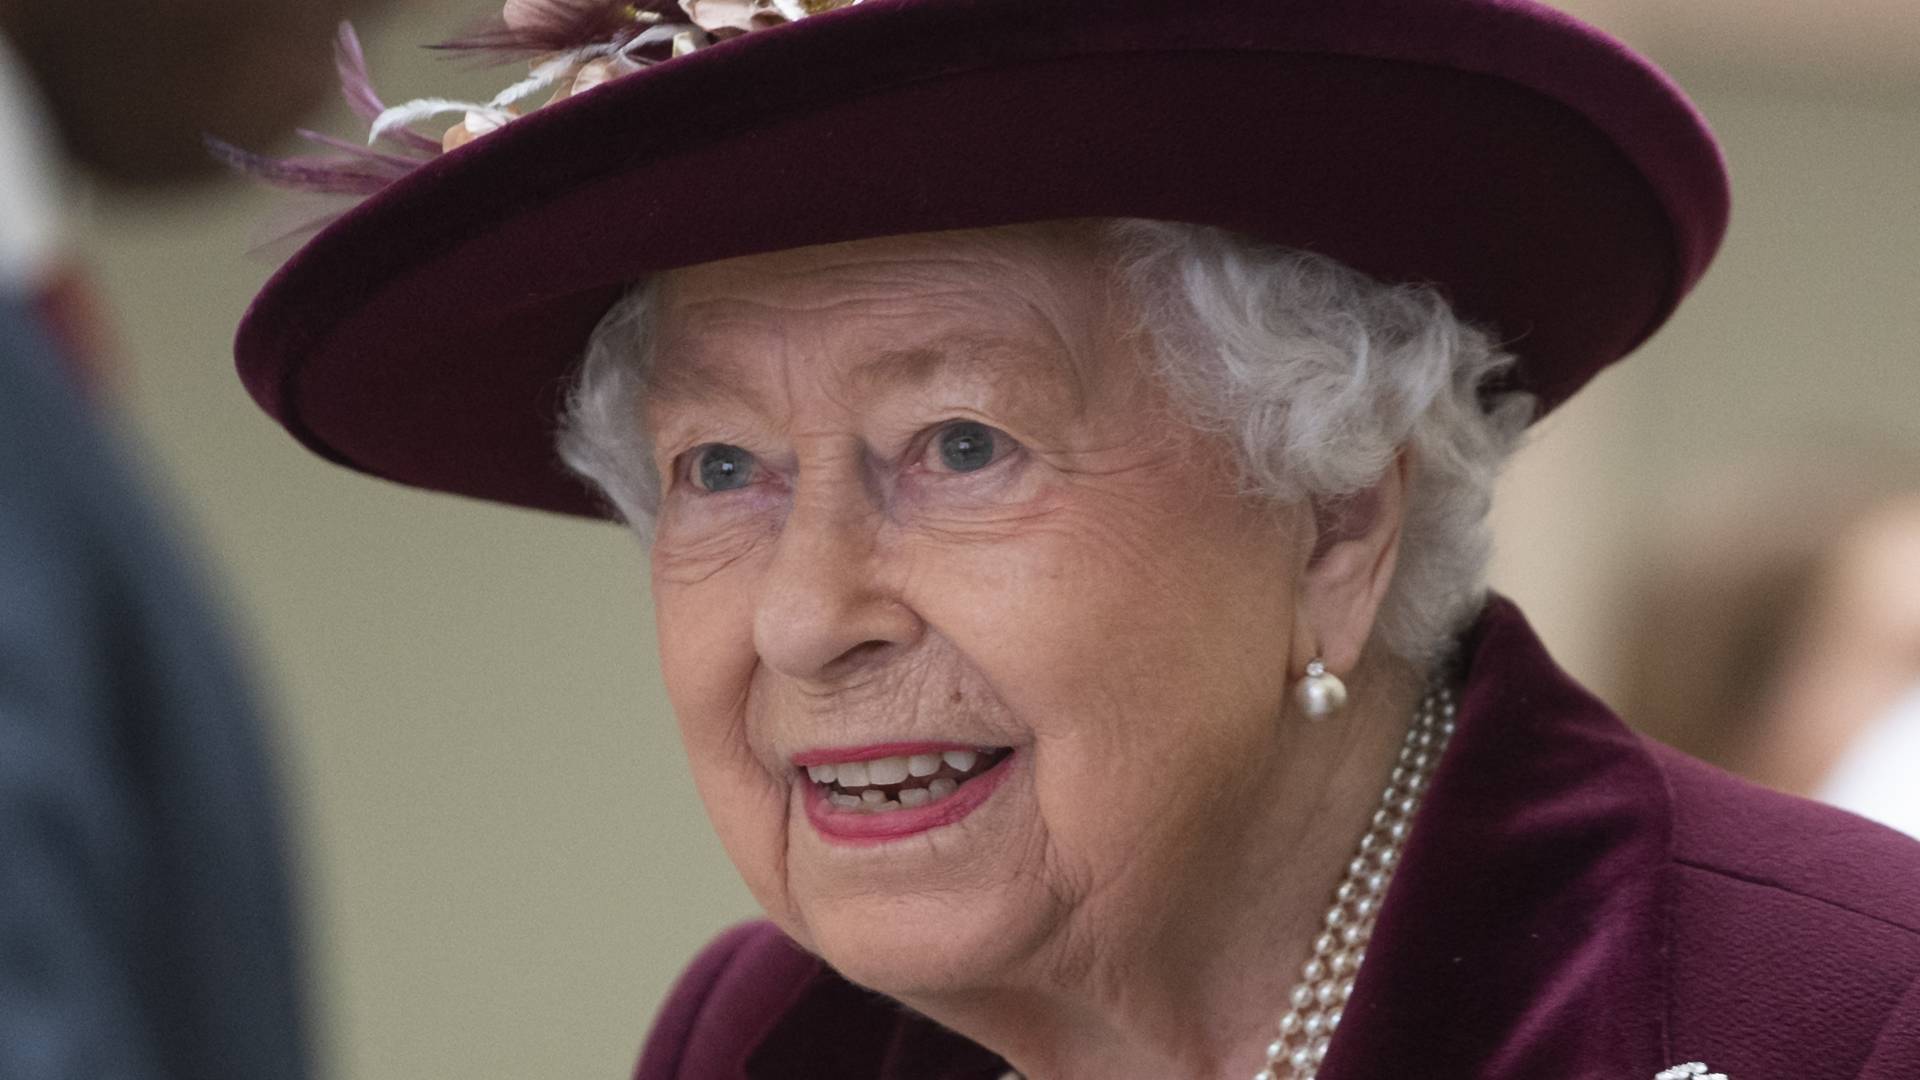 Jak na kwarantannie radzi sobie Elżbieta II? Królowa musiała zrezygnować z jazdy konnej